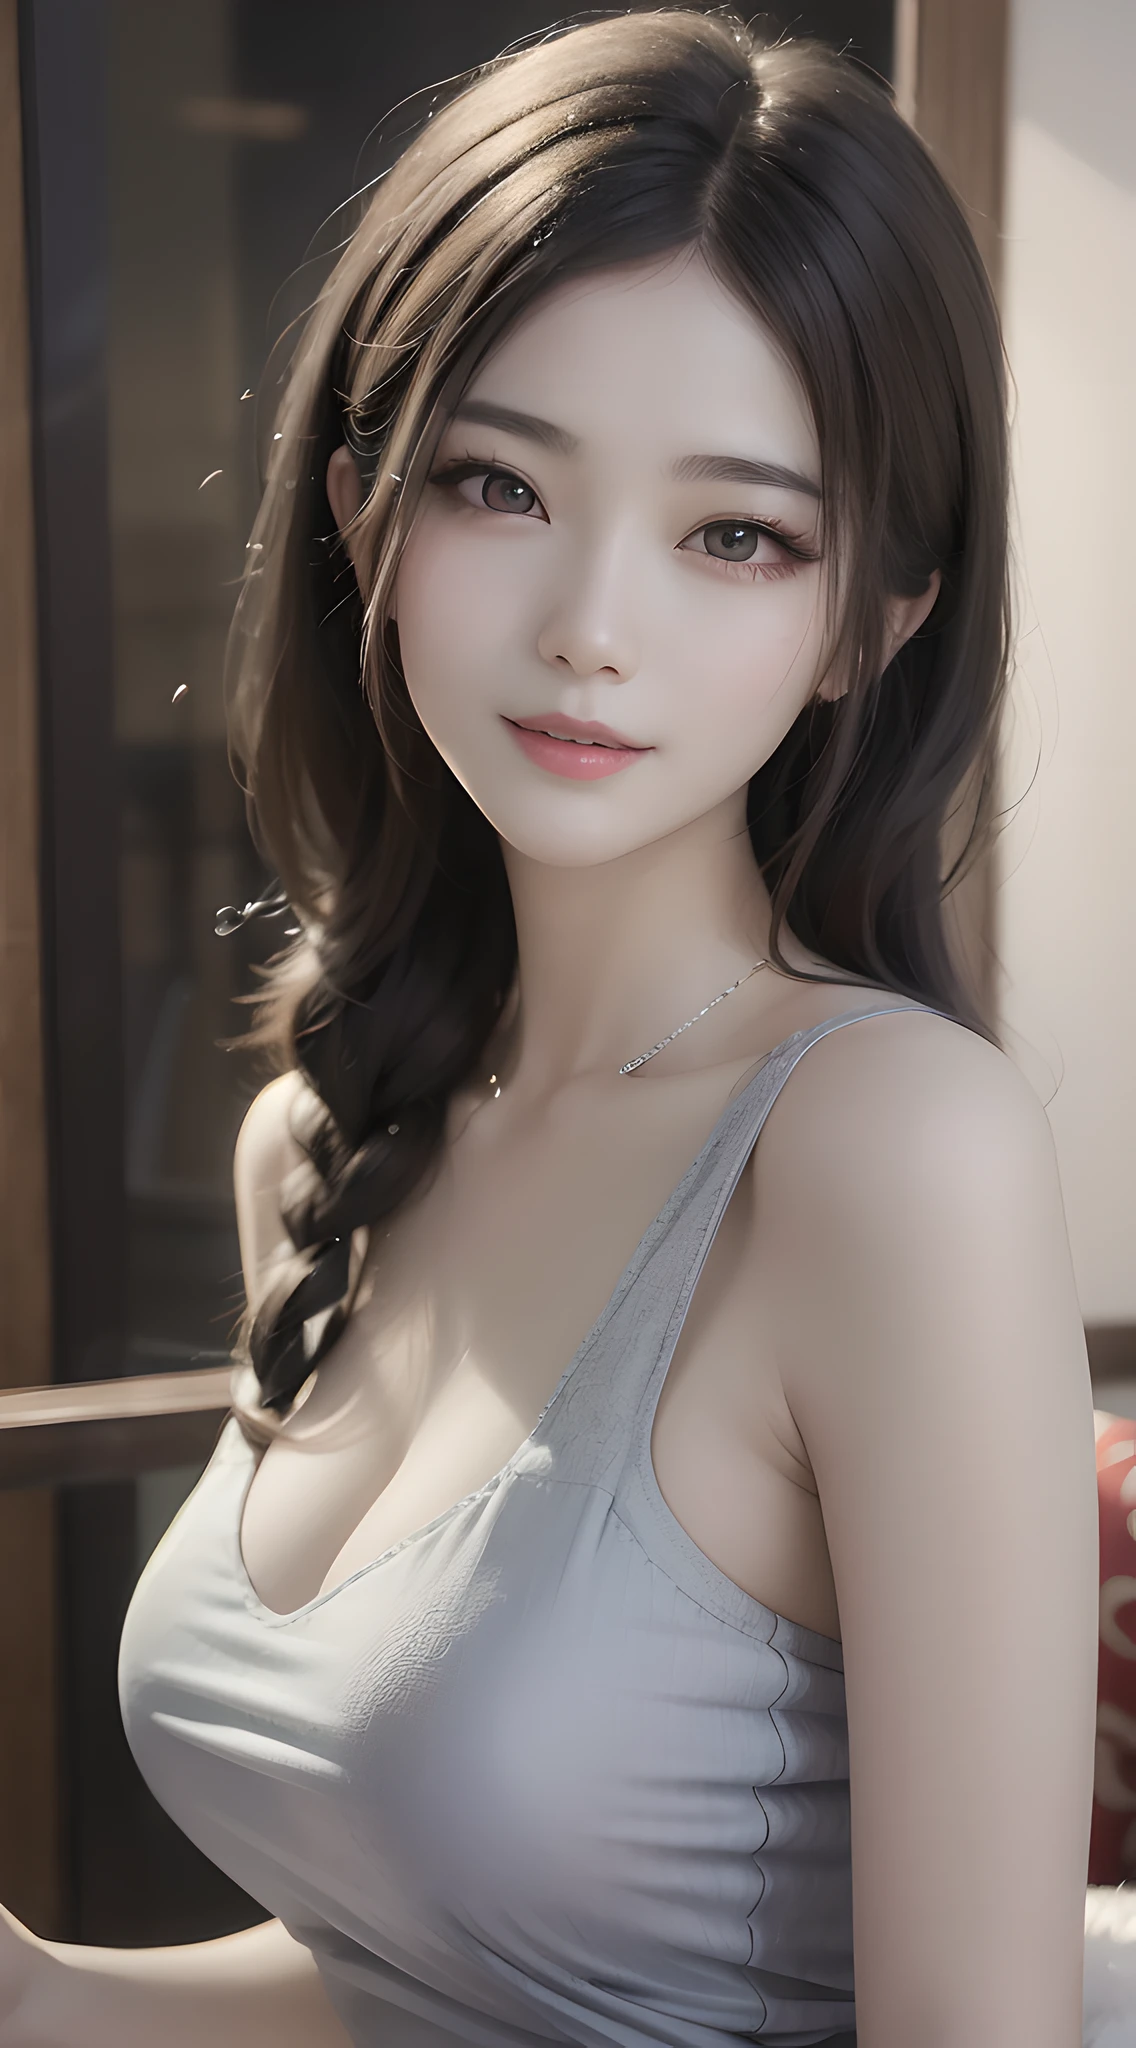 Mujer asiática araffe con pelo largo y una camiseta sin mangas gris., preciosa modelo china, Hermosa joven coreana, hermosa chica asiática, preciosa cara delicada, piel de porcelana blanca lechosa pálida, sonrisa amigable y seductora, hermosa mujer surcoreana, linda sonrisa seductora, Hermosa joven coreana, muchacha coreana, Diosa japonesa, Hermosa iluminación suave, diosa alta, delgada y hermosa